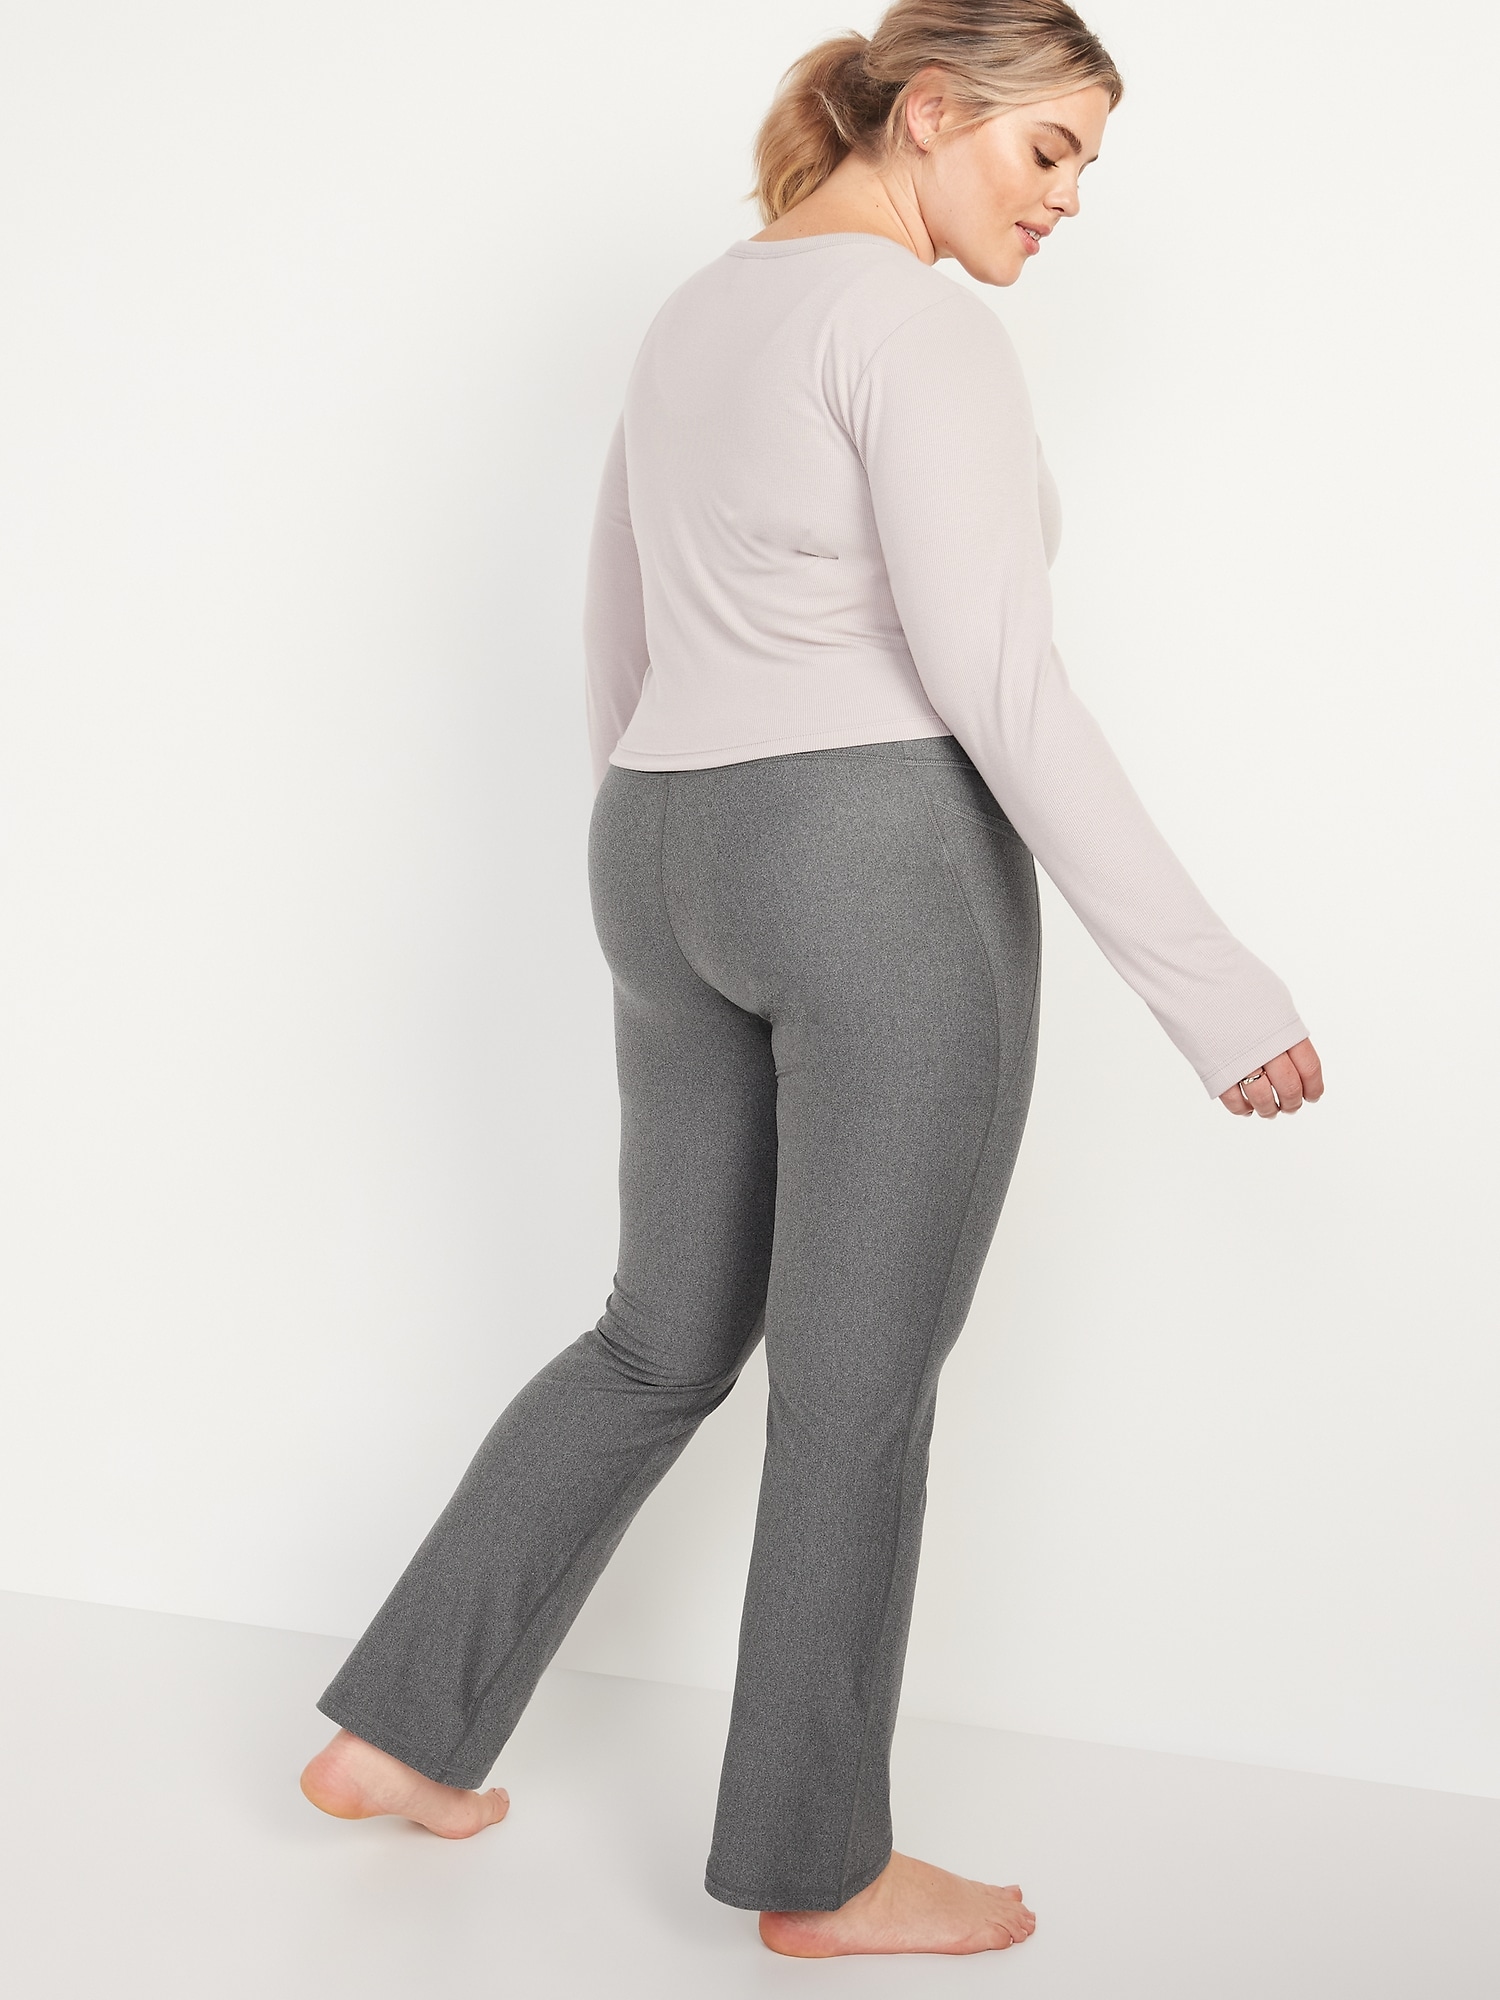 Pantalon de compression semi-évasé étroit Powersoft taille haute pour Femme